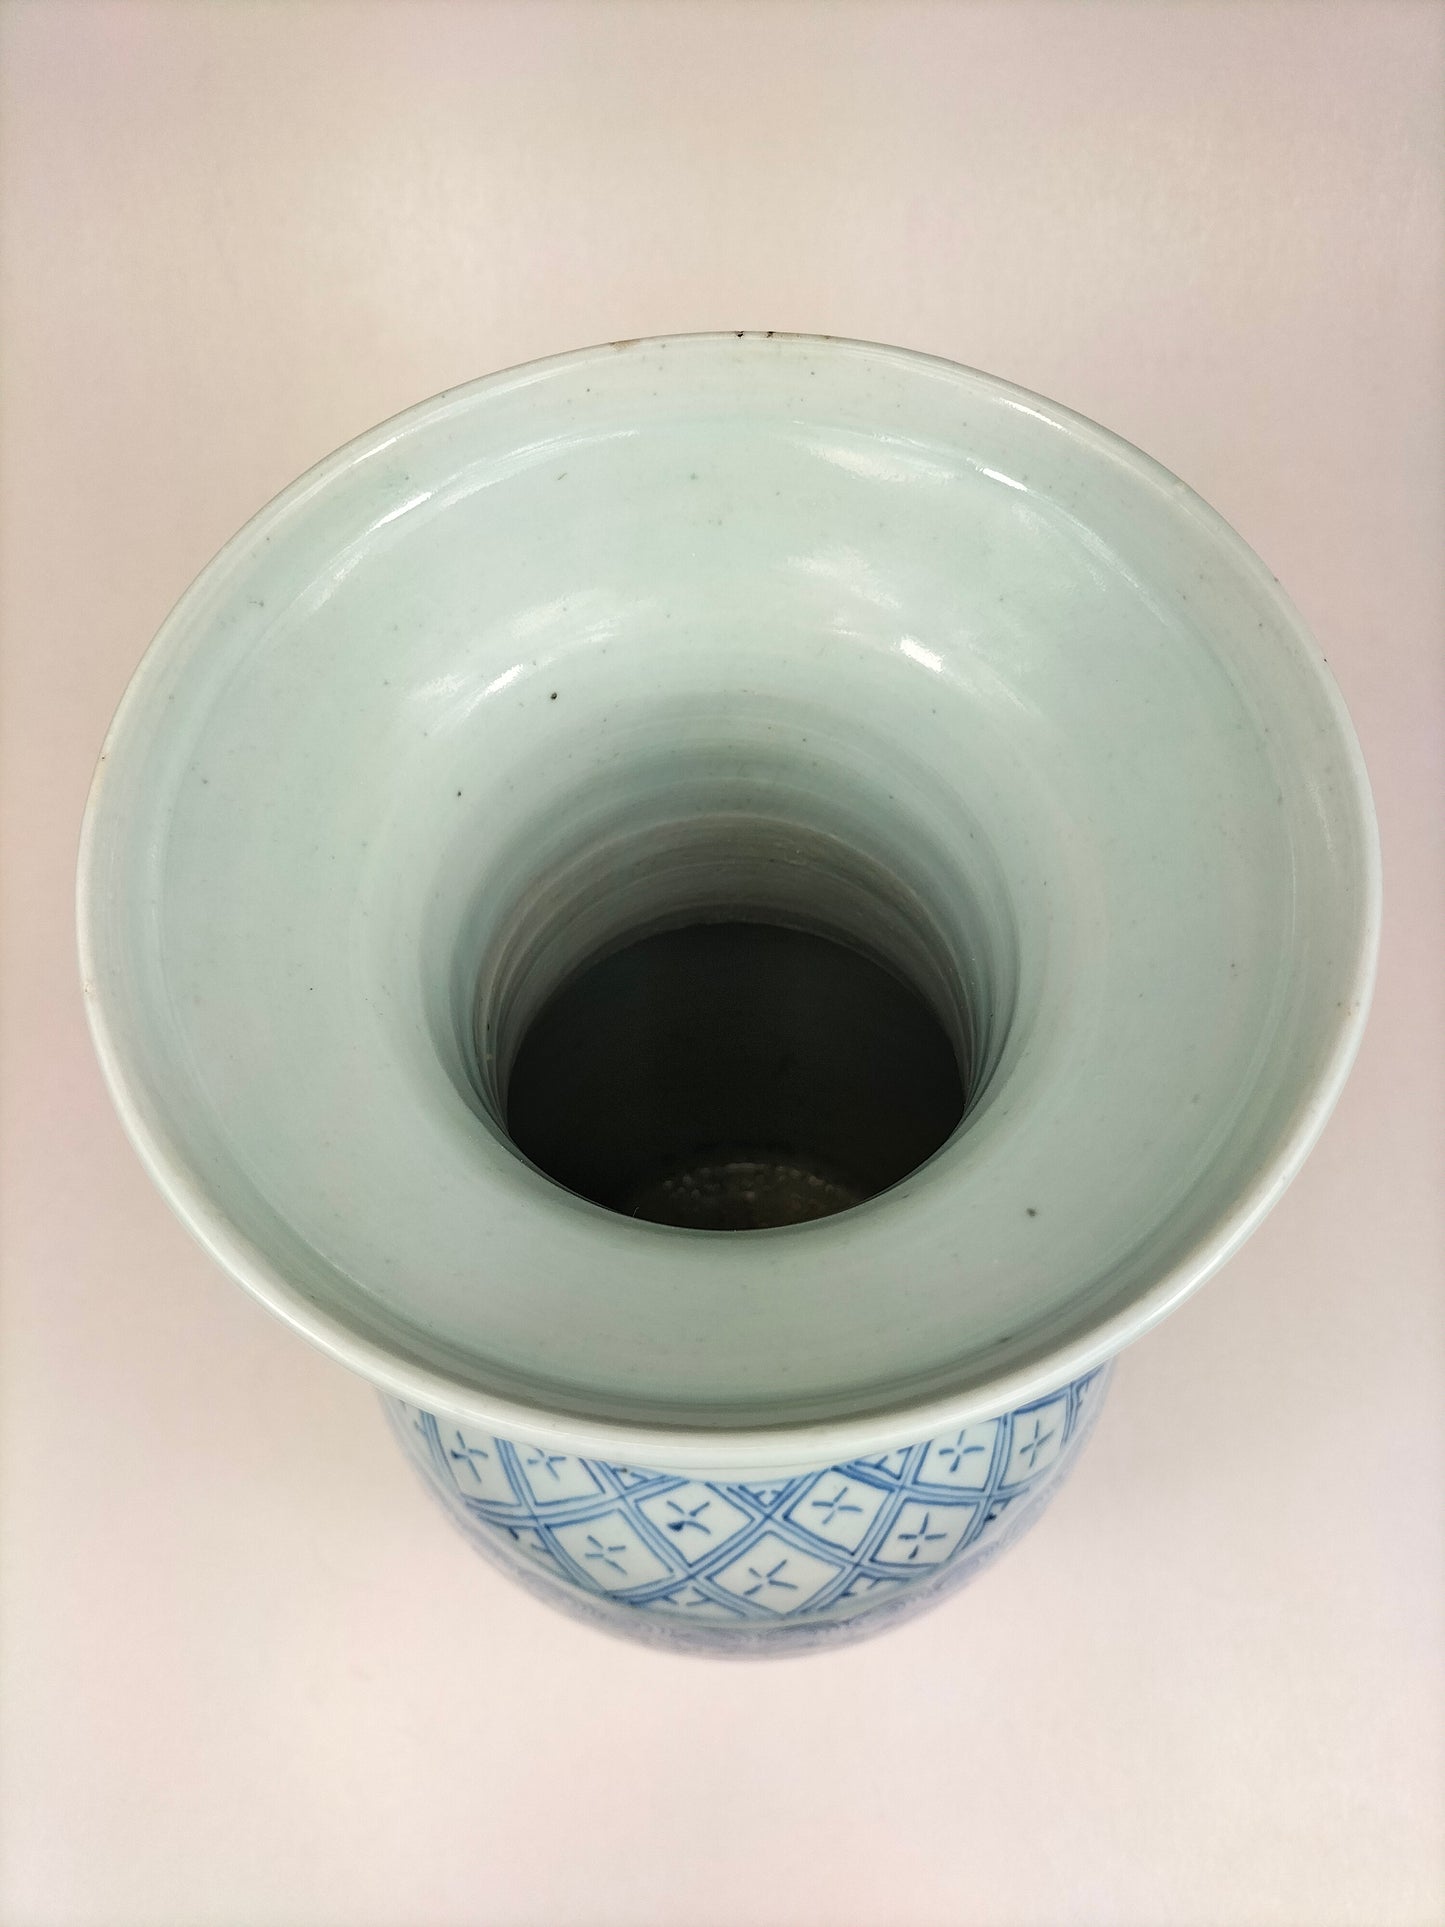 Vase double bonheur chinois antique // Dynastie Qing - 19ème siècle